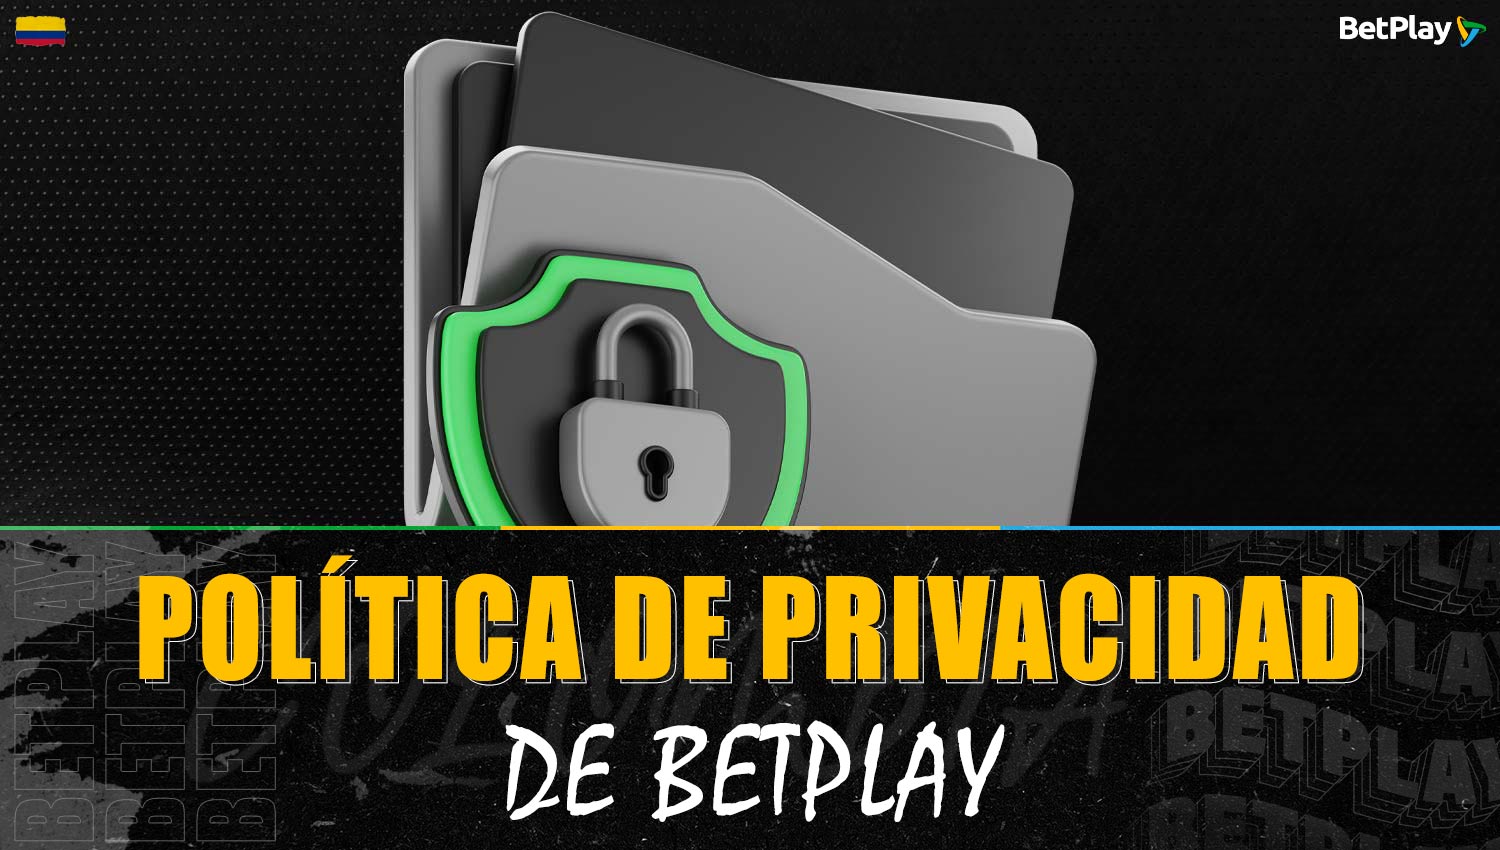 Descripción detallada de la política de privacidad de Betplay